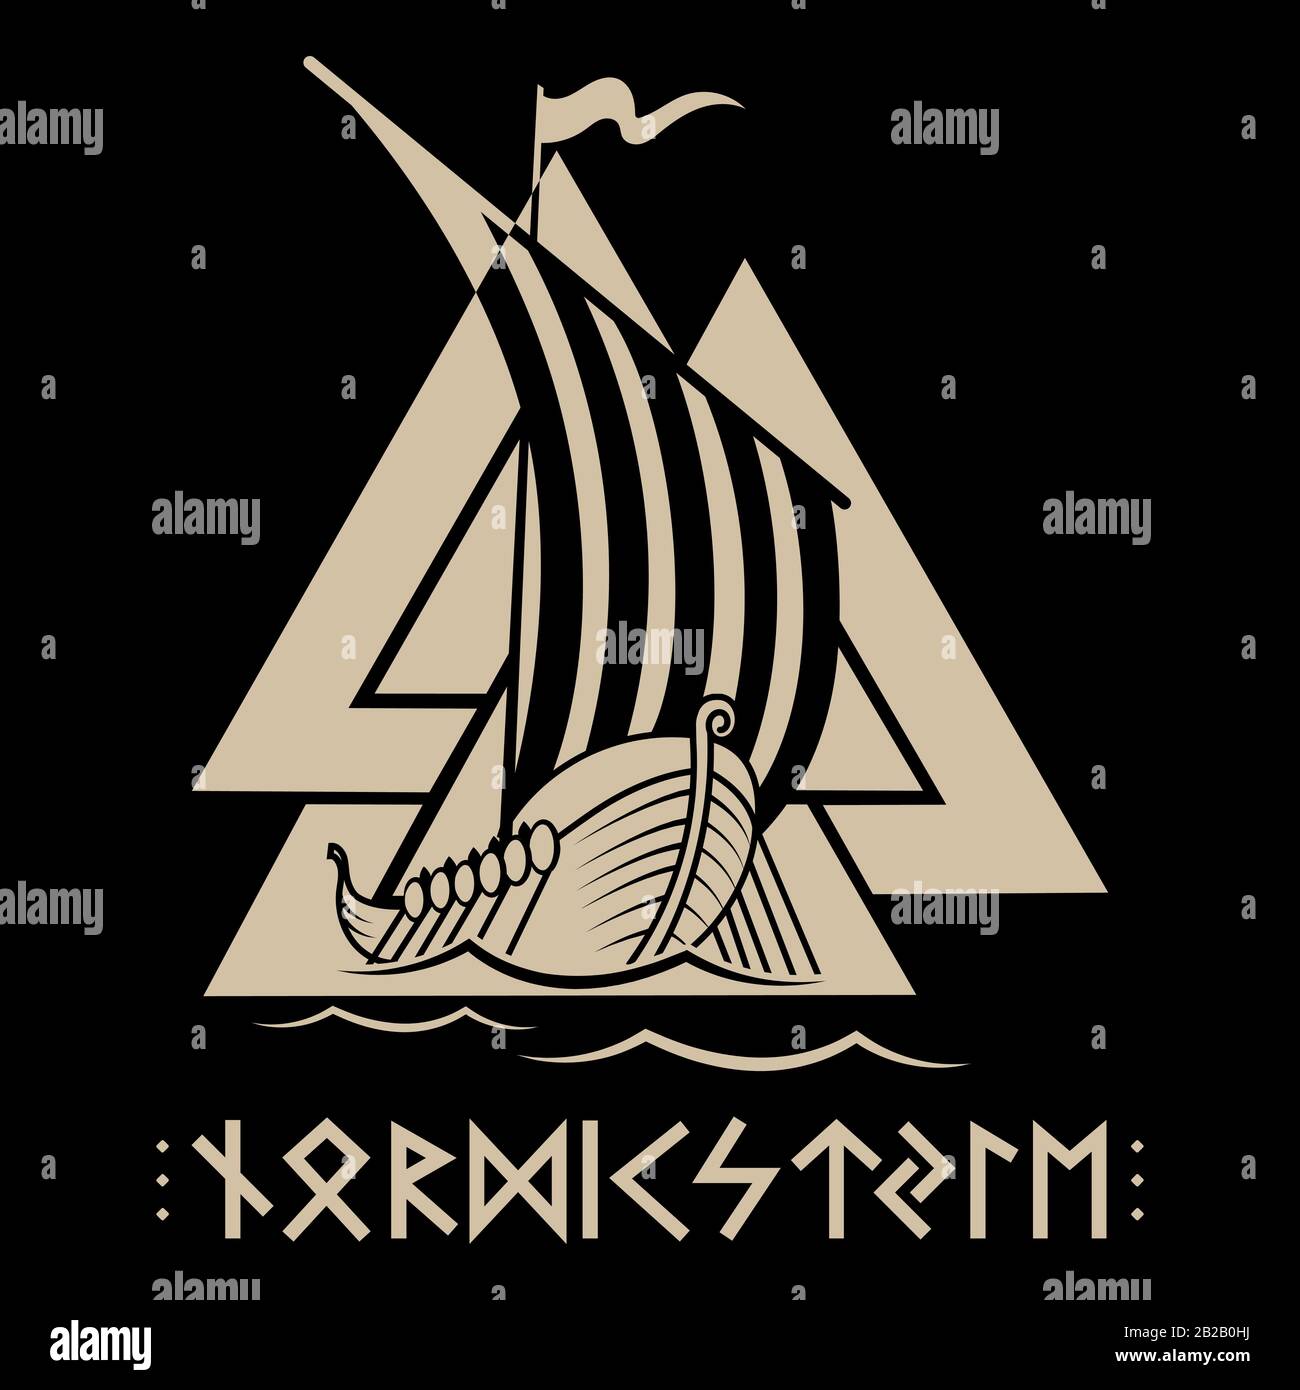 Navire de guerre des Vikings. Drakkar, ancien modèle scandinave et runes norse Illustration de Vecteur